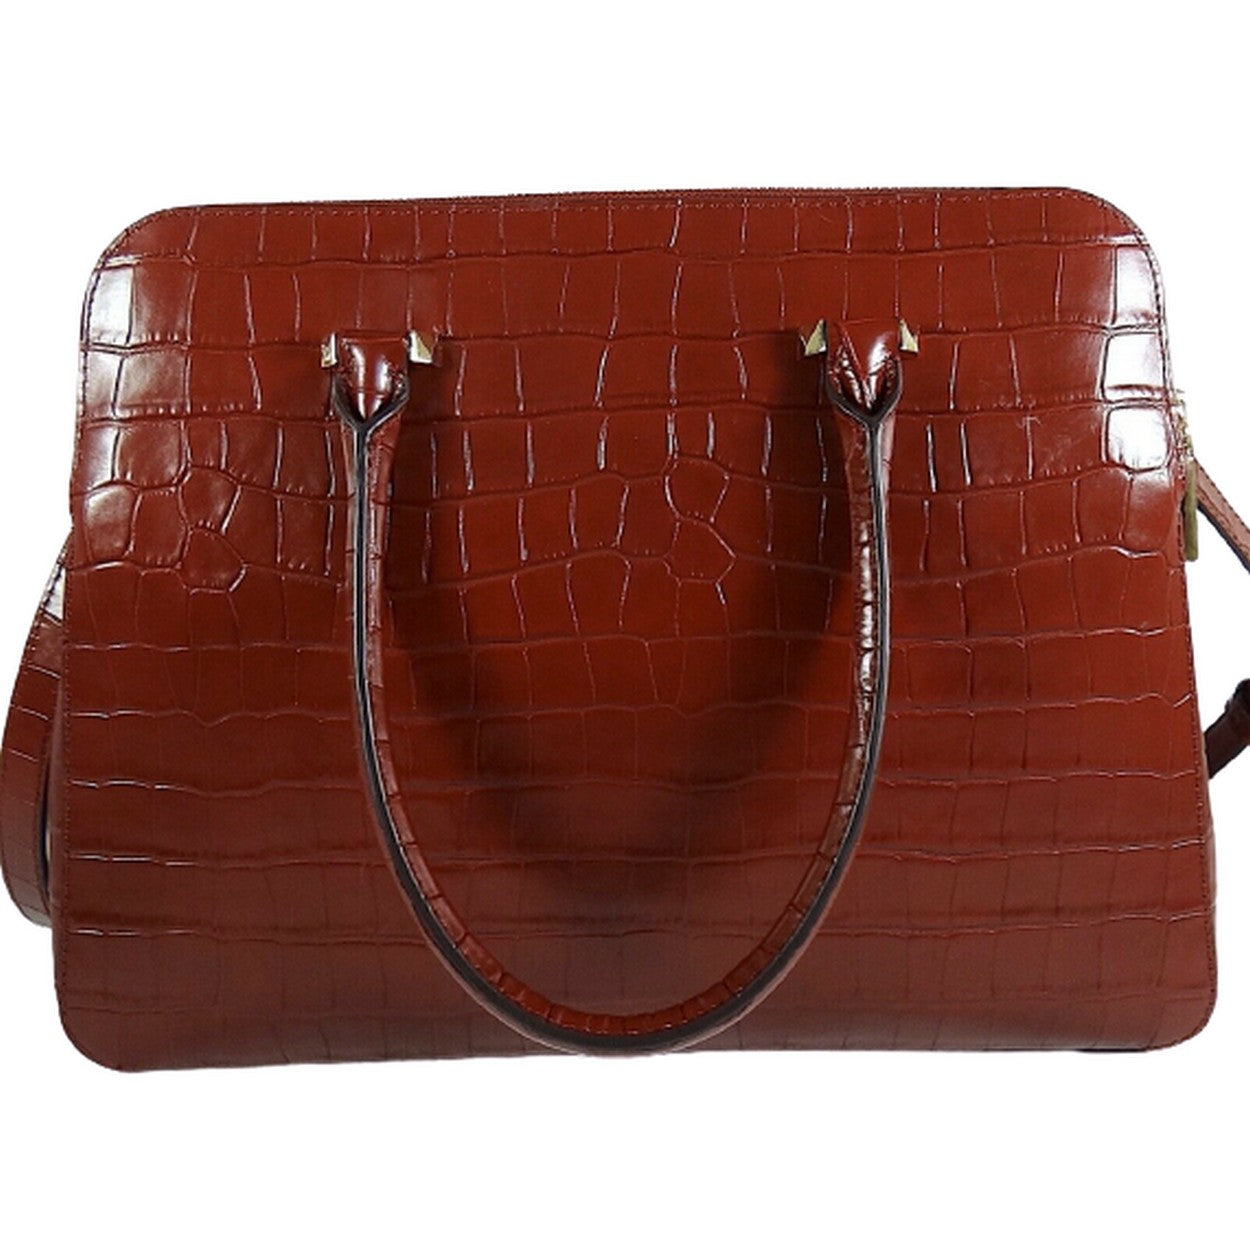 Double Zip Satchel Leather Handbag | Michael Kors.jpg